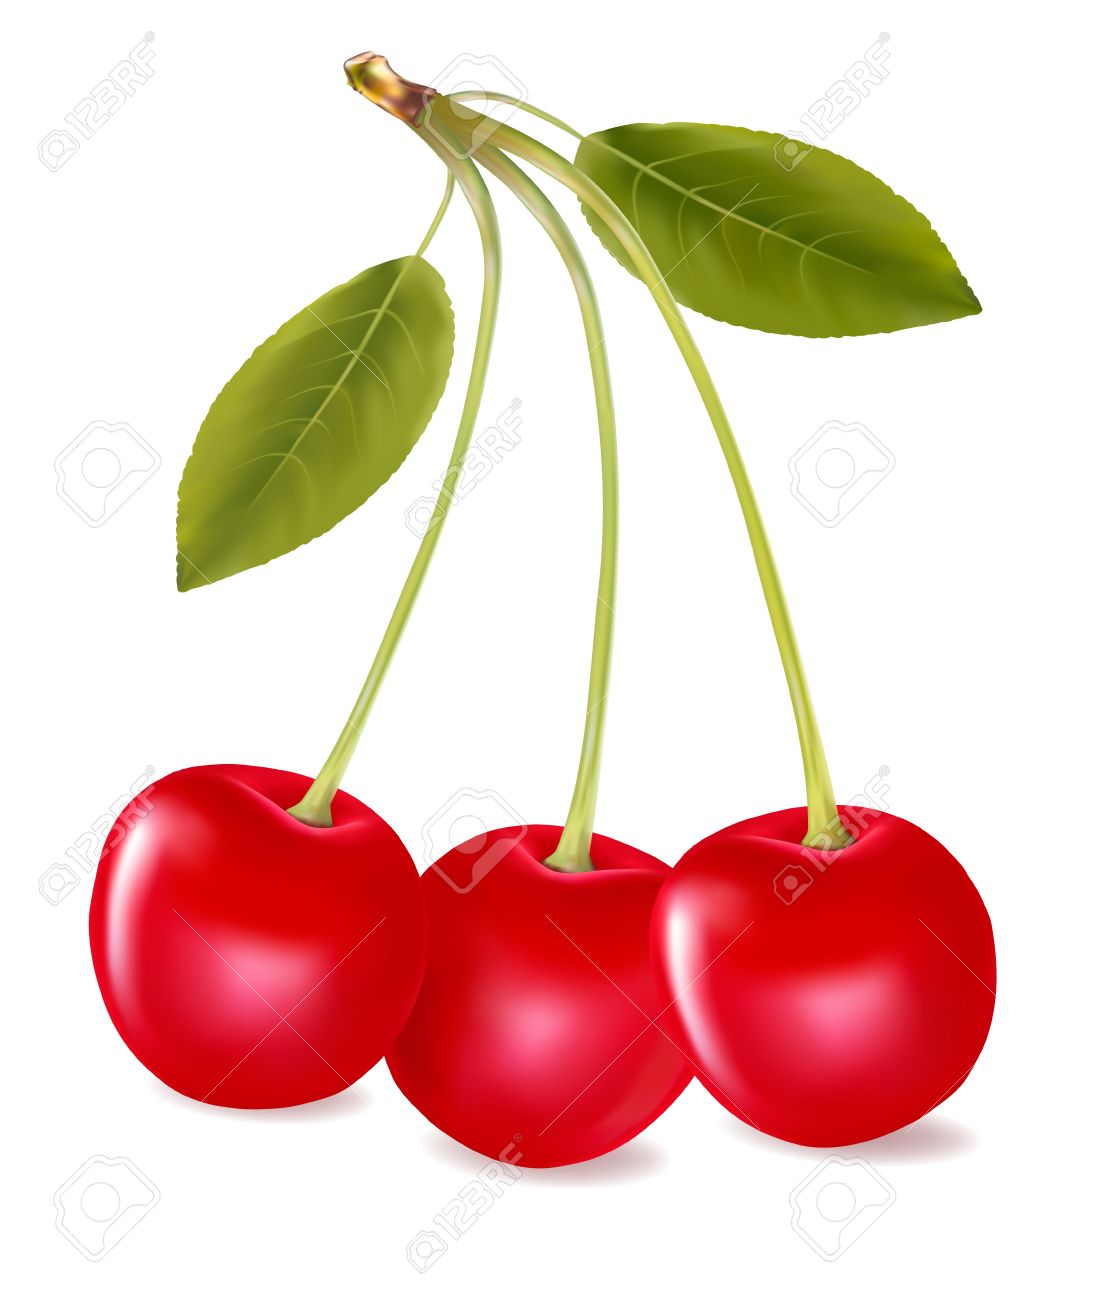 Cherry three